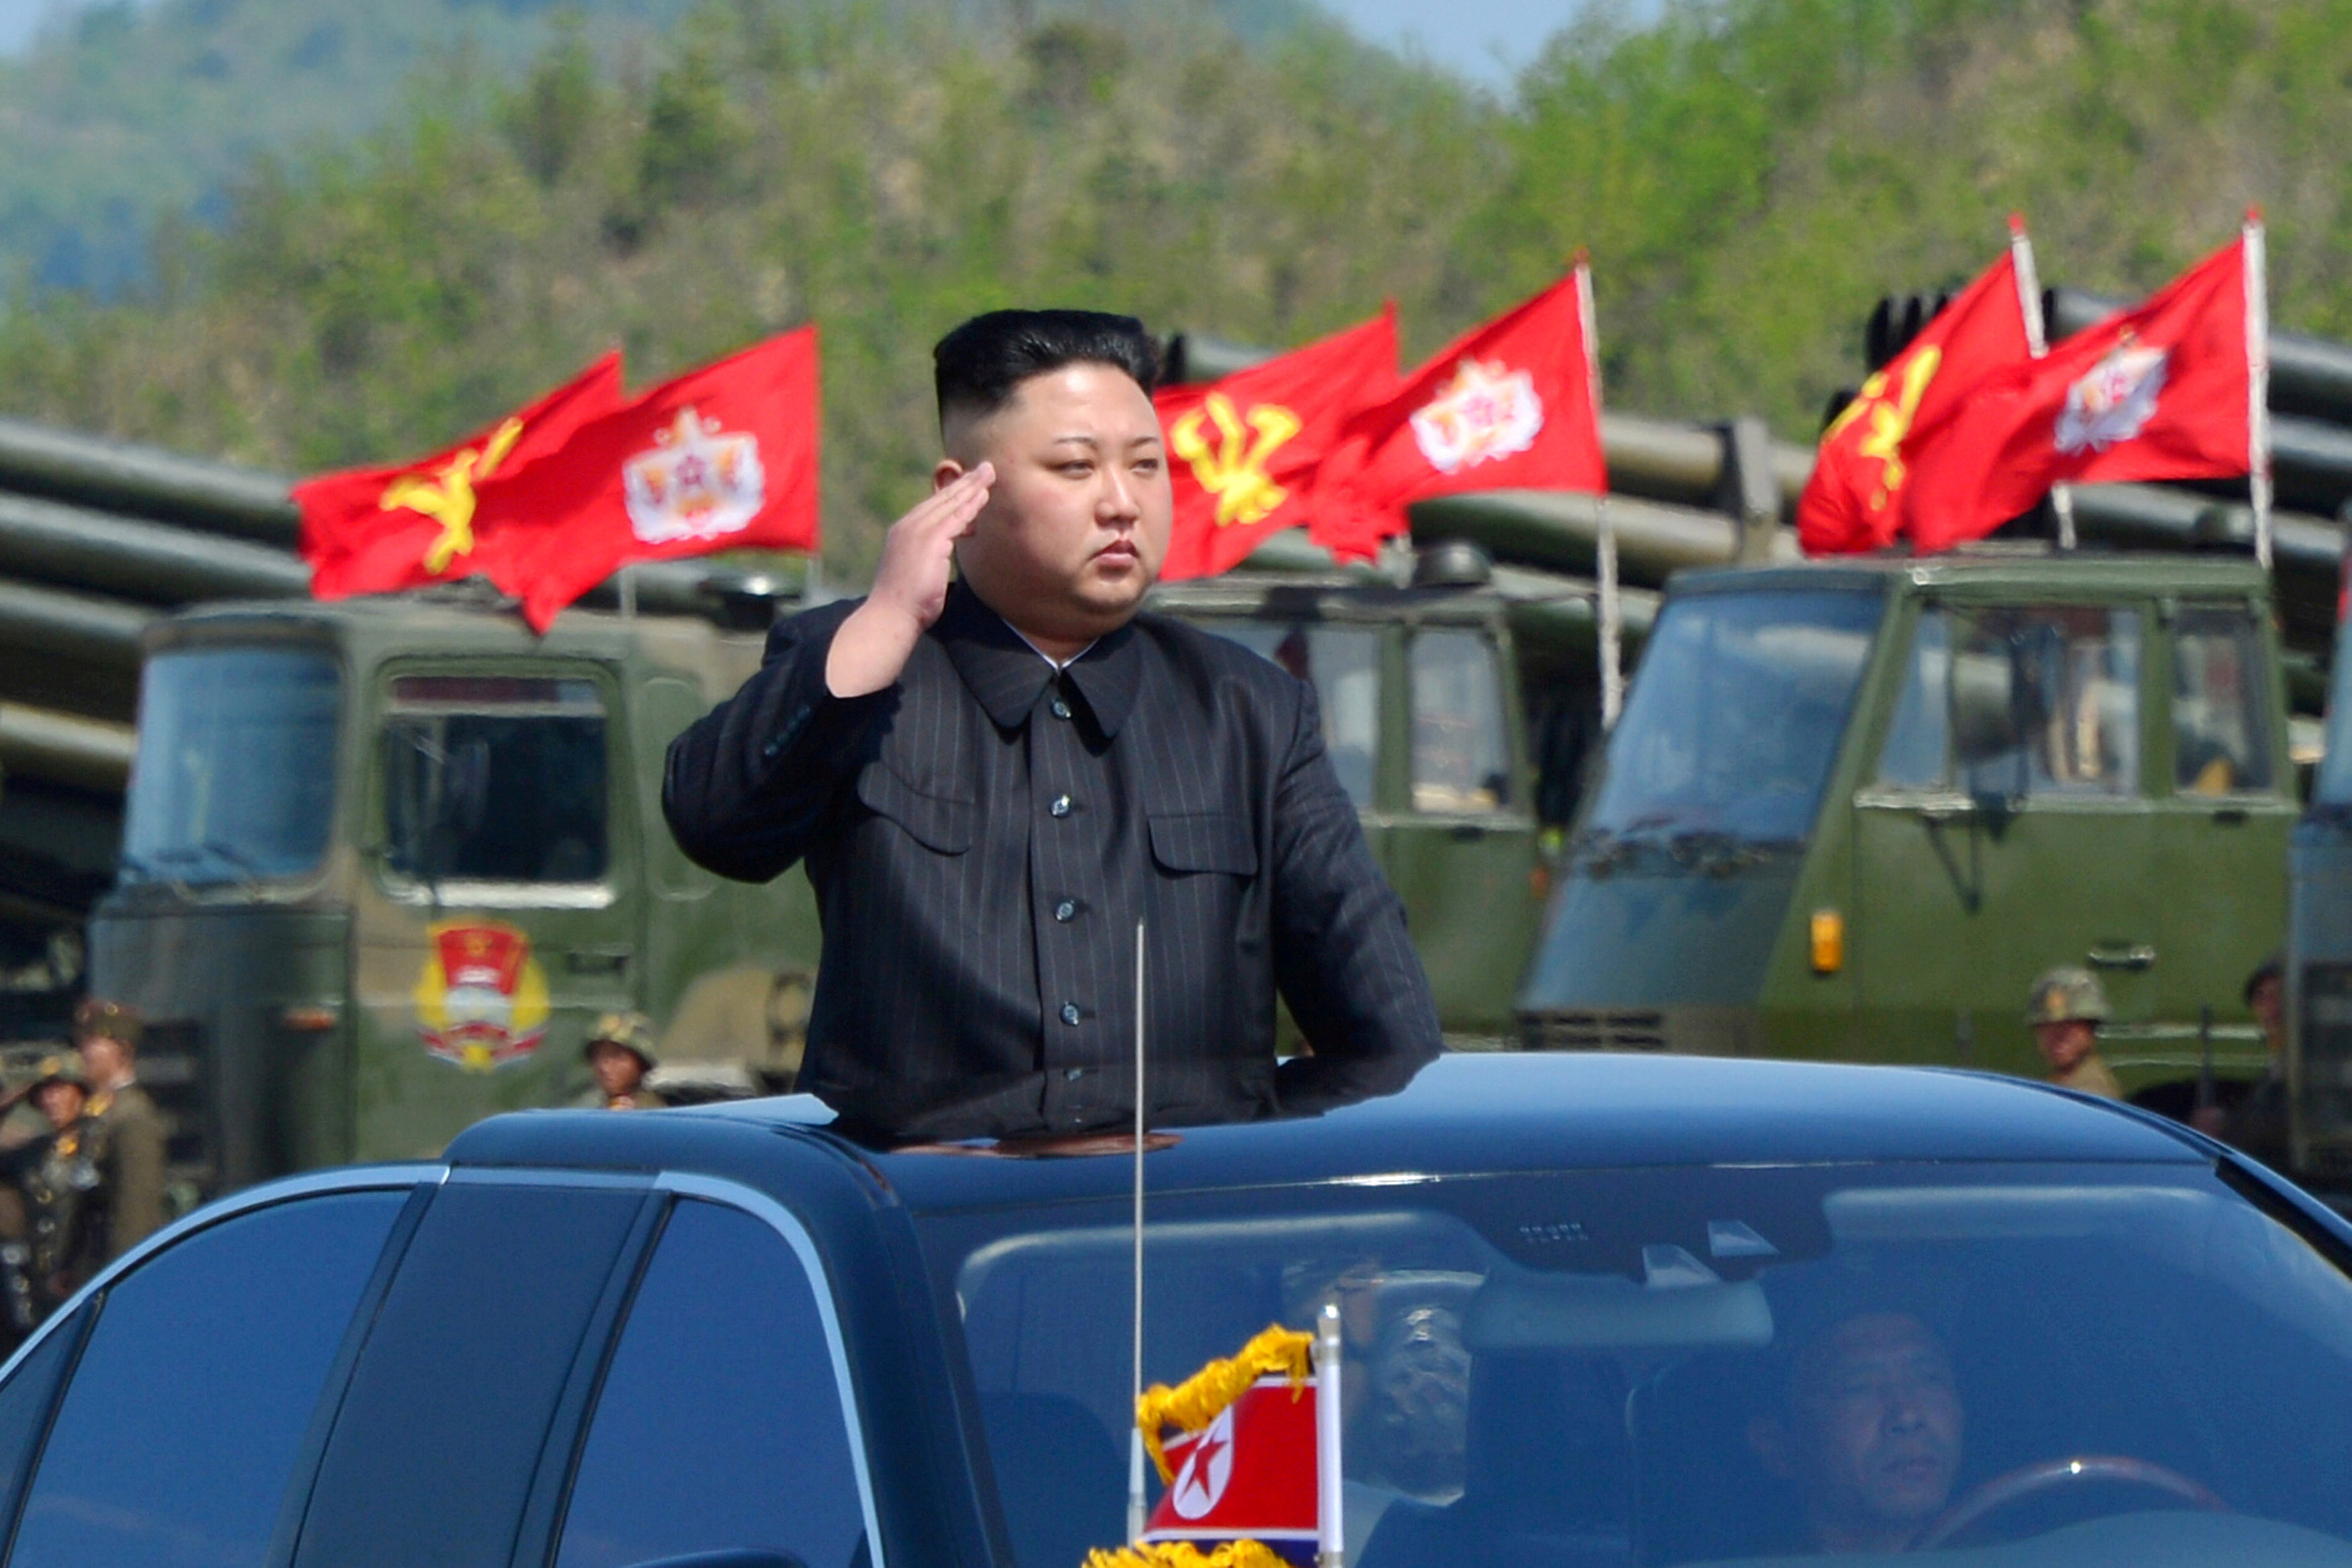 زعيم كوريا الشمالية يؤدى التحية العسكرية لأفراد الجيش